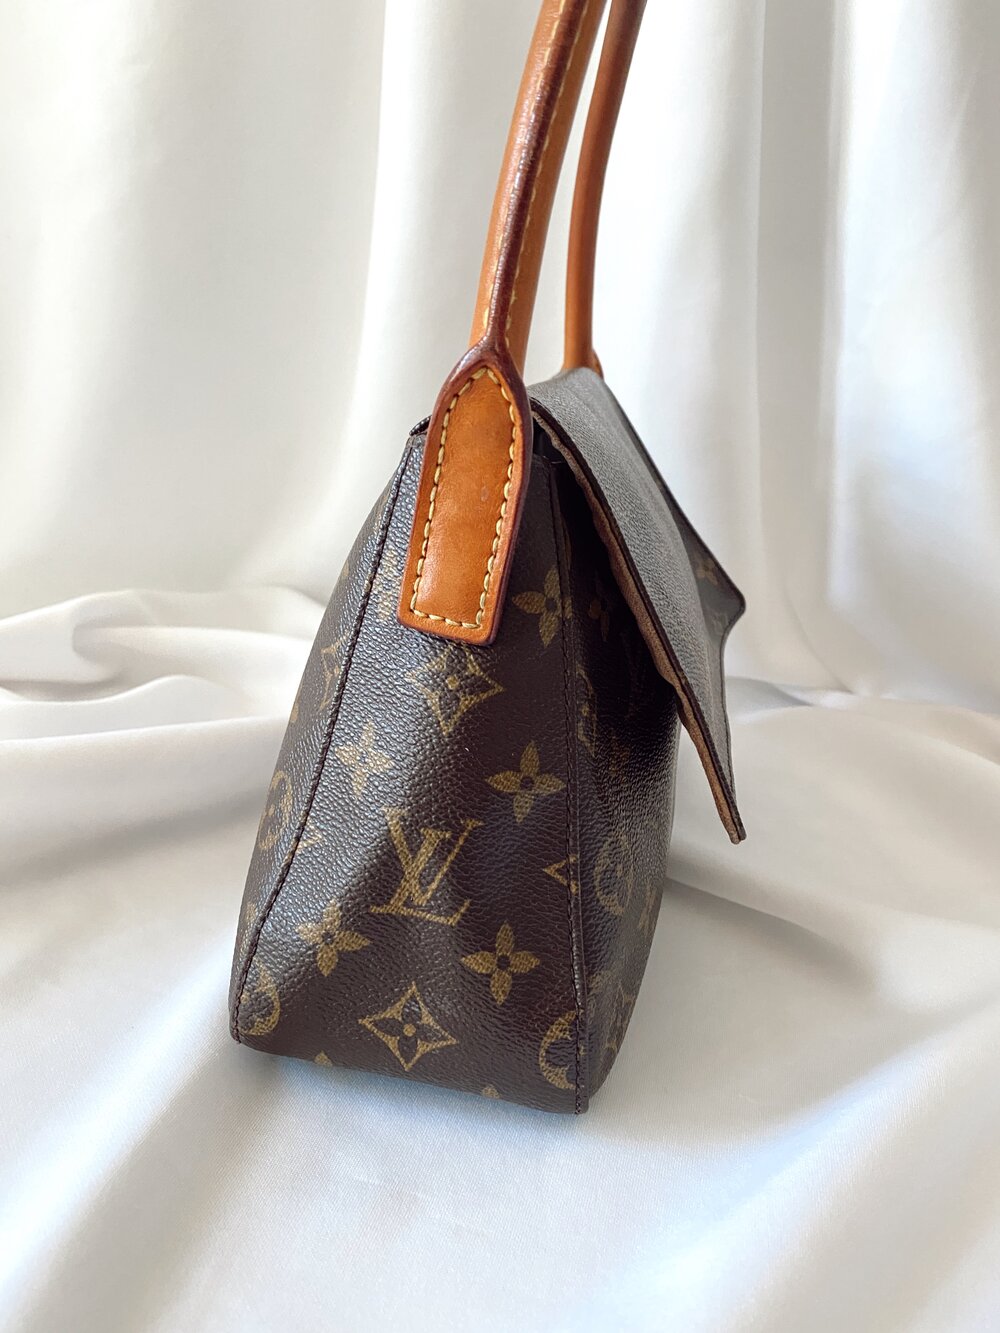 This vintage Louis Vuitton monogram mini looping bag